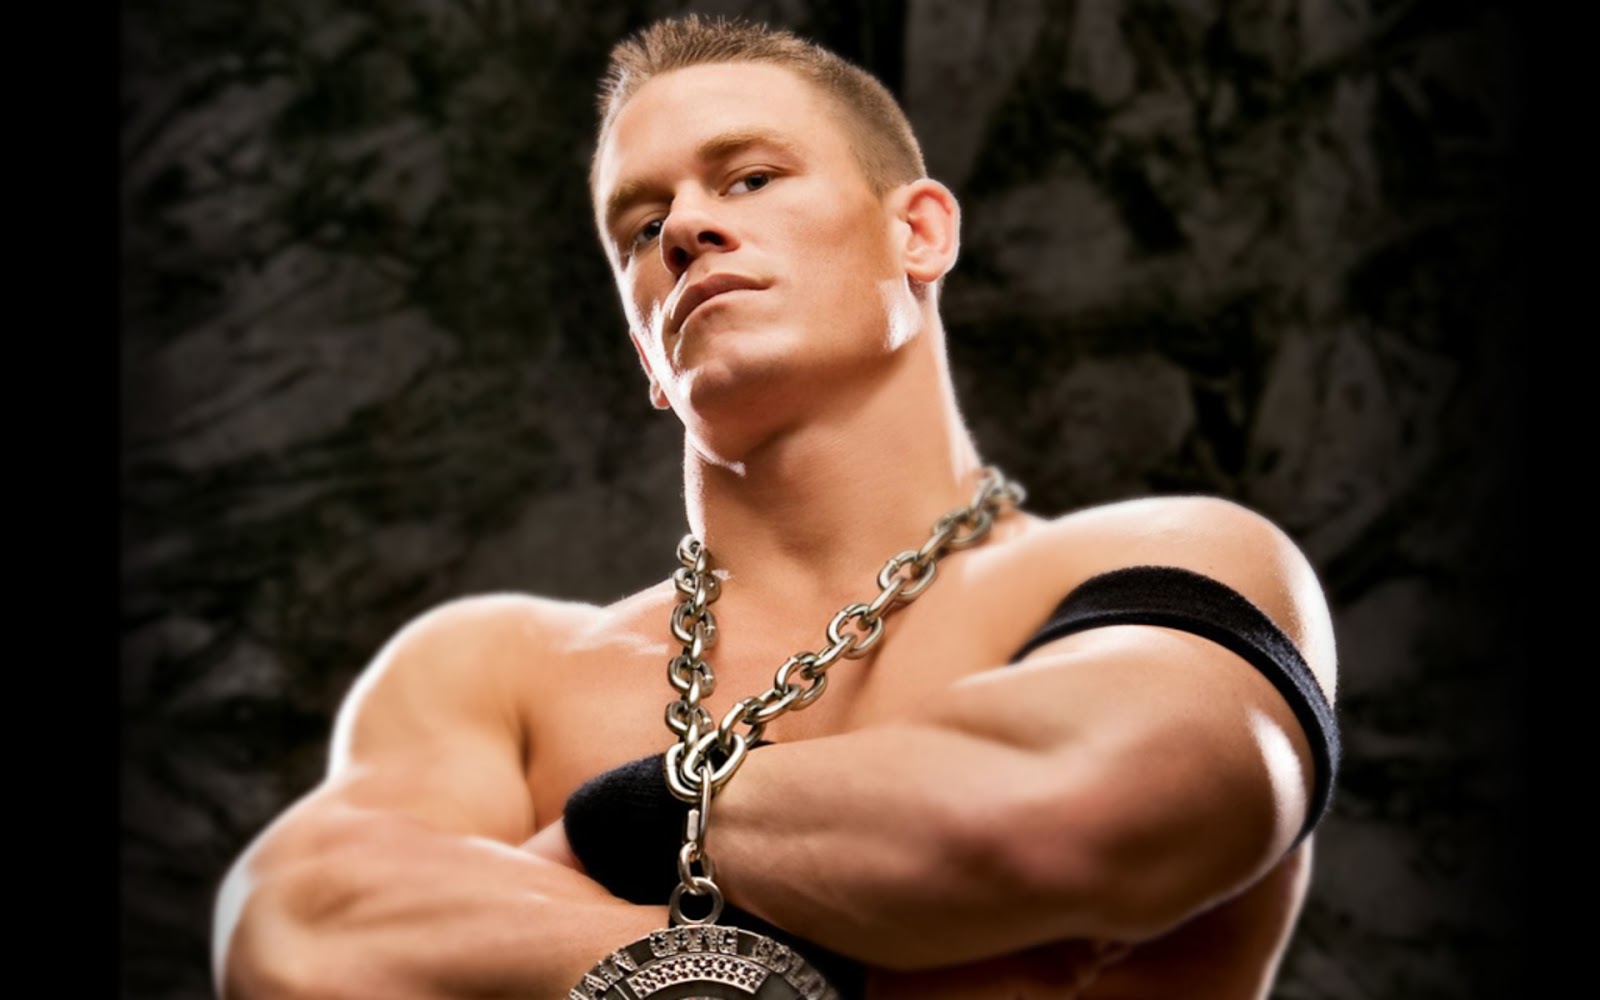 John Cena Wallpapers Beautiful John Cena Picture Superstar John Cena Of Wwe John Cena